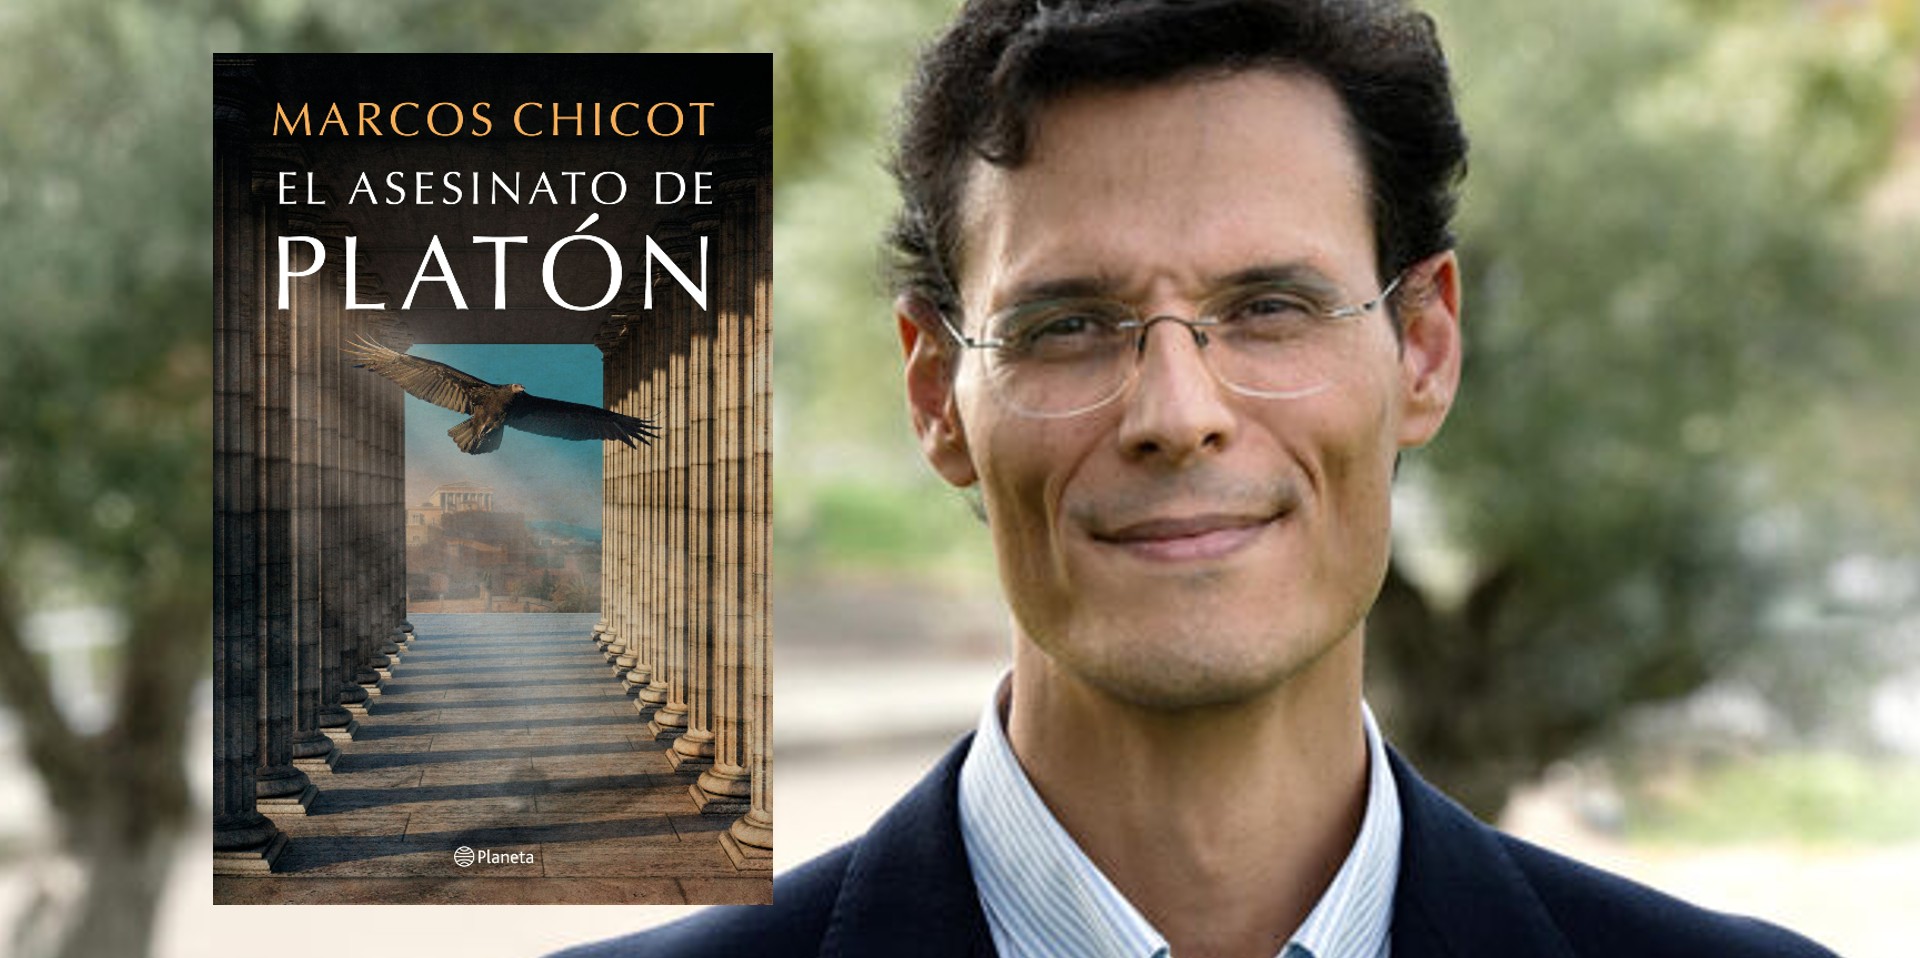 El escritor español Marcos Chicot y su libro "El asesinato de Platón". (Diario de Sevilla).